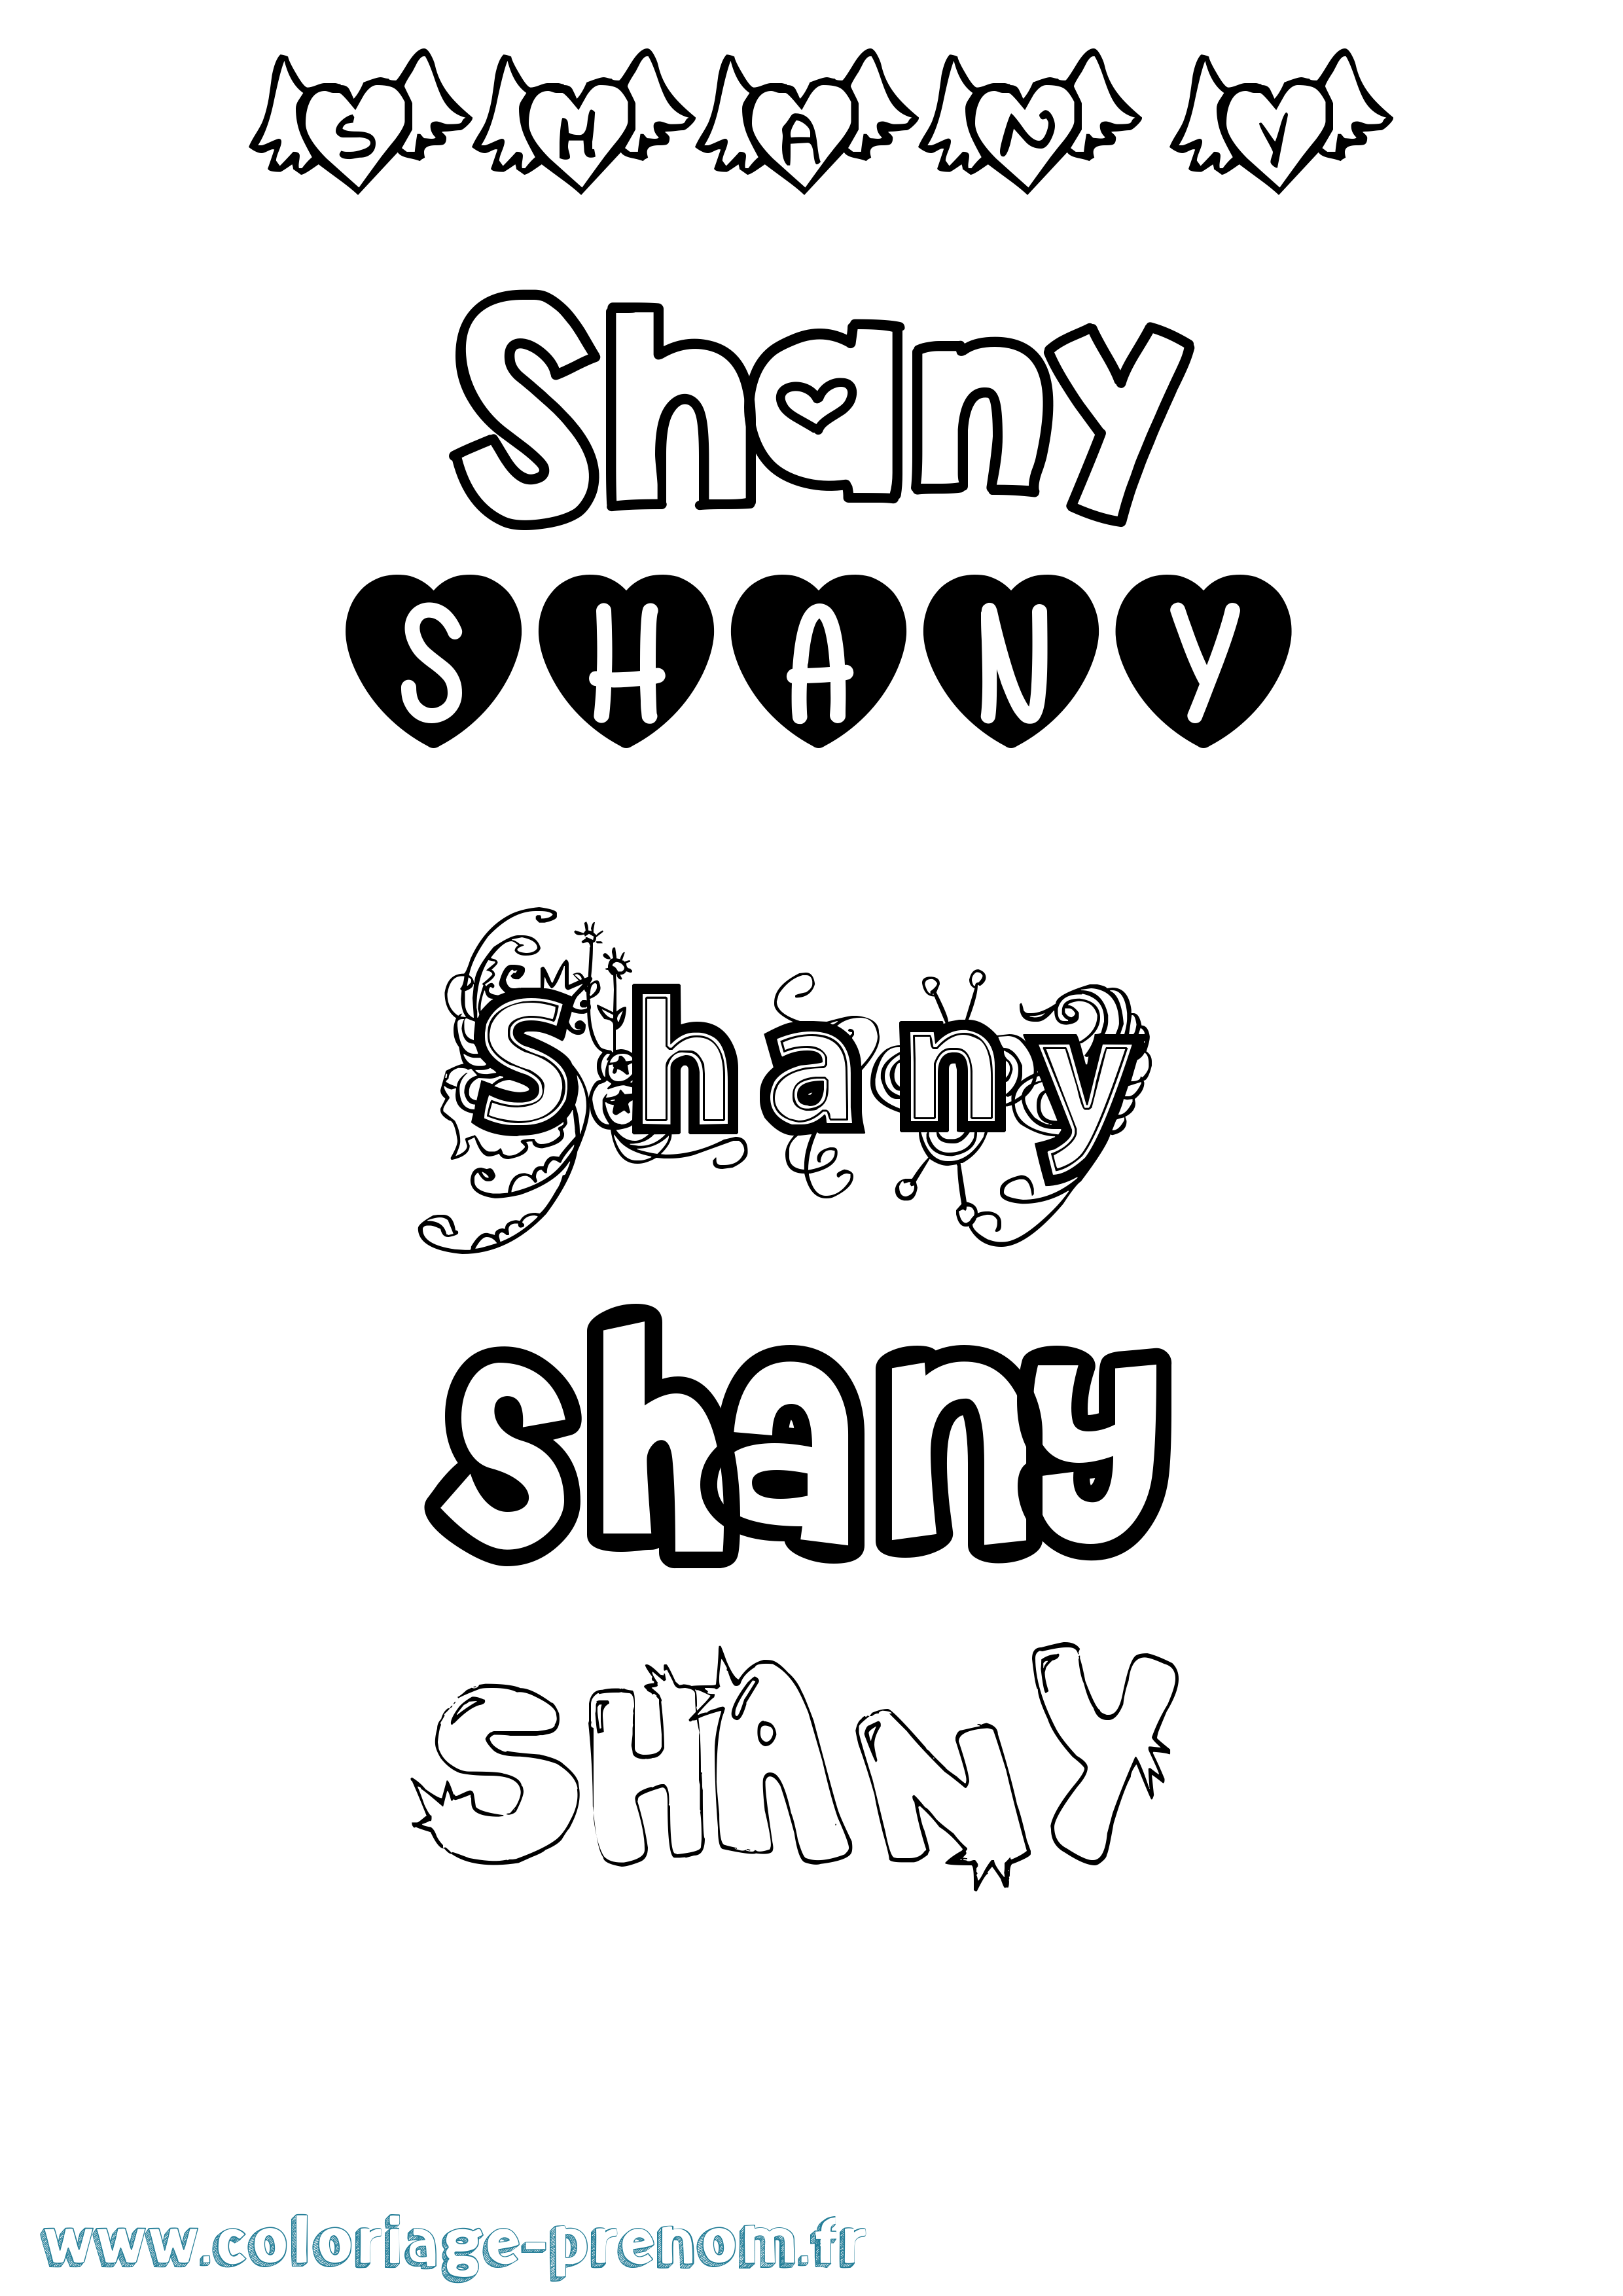 Coloriage prénom Shany Girly